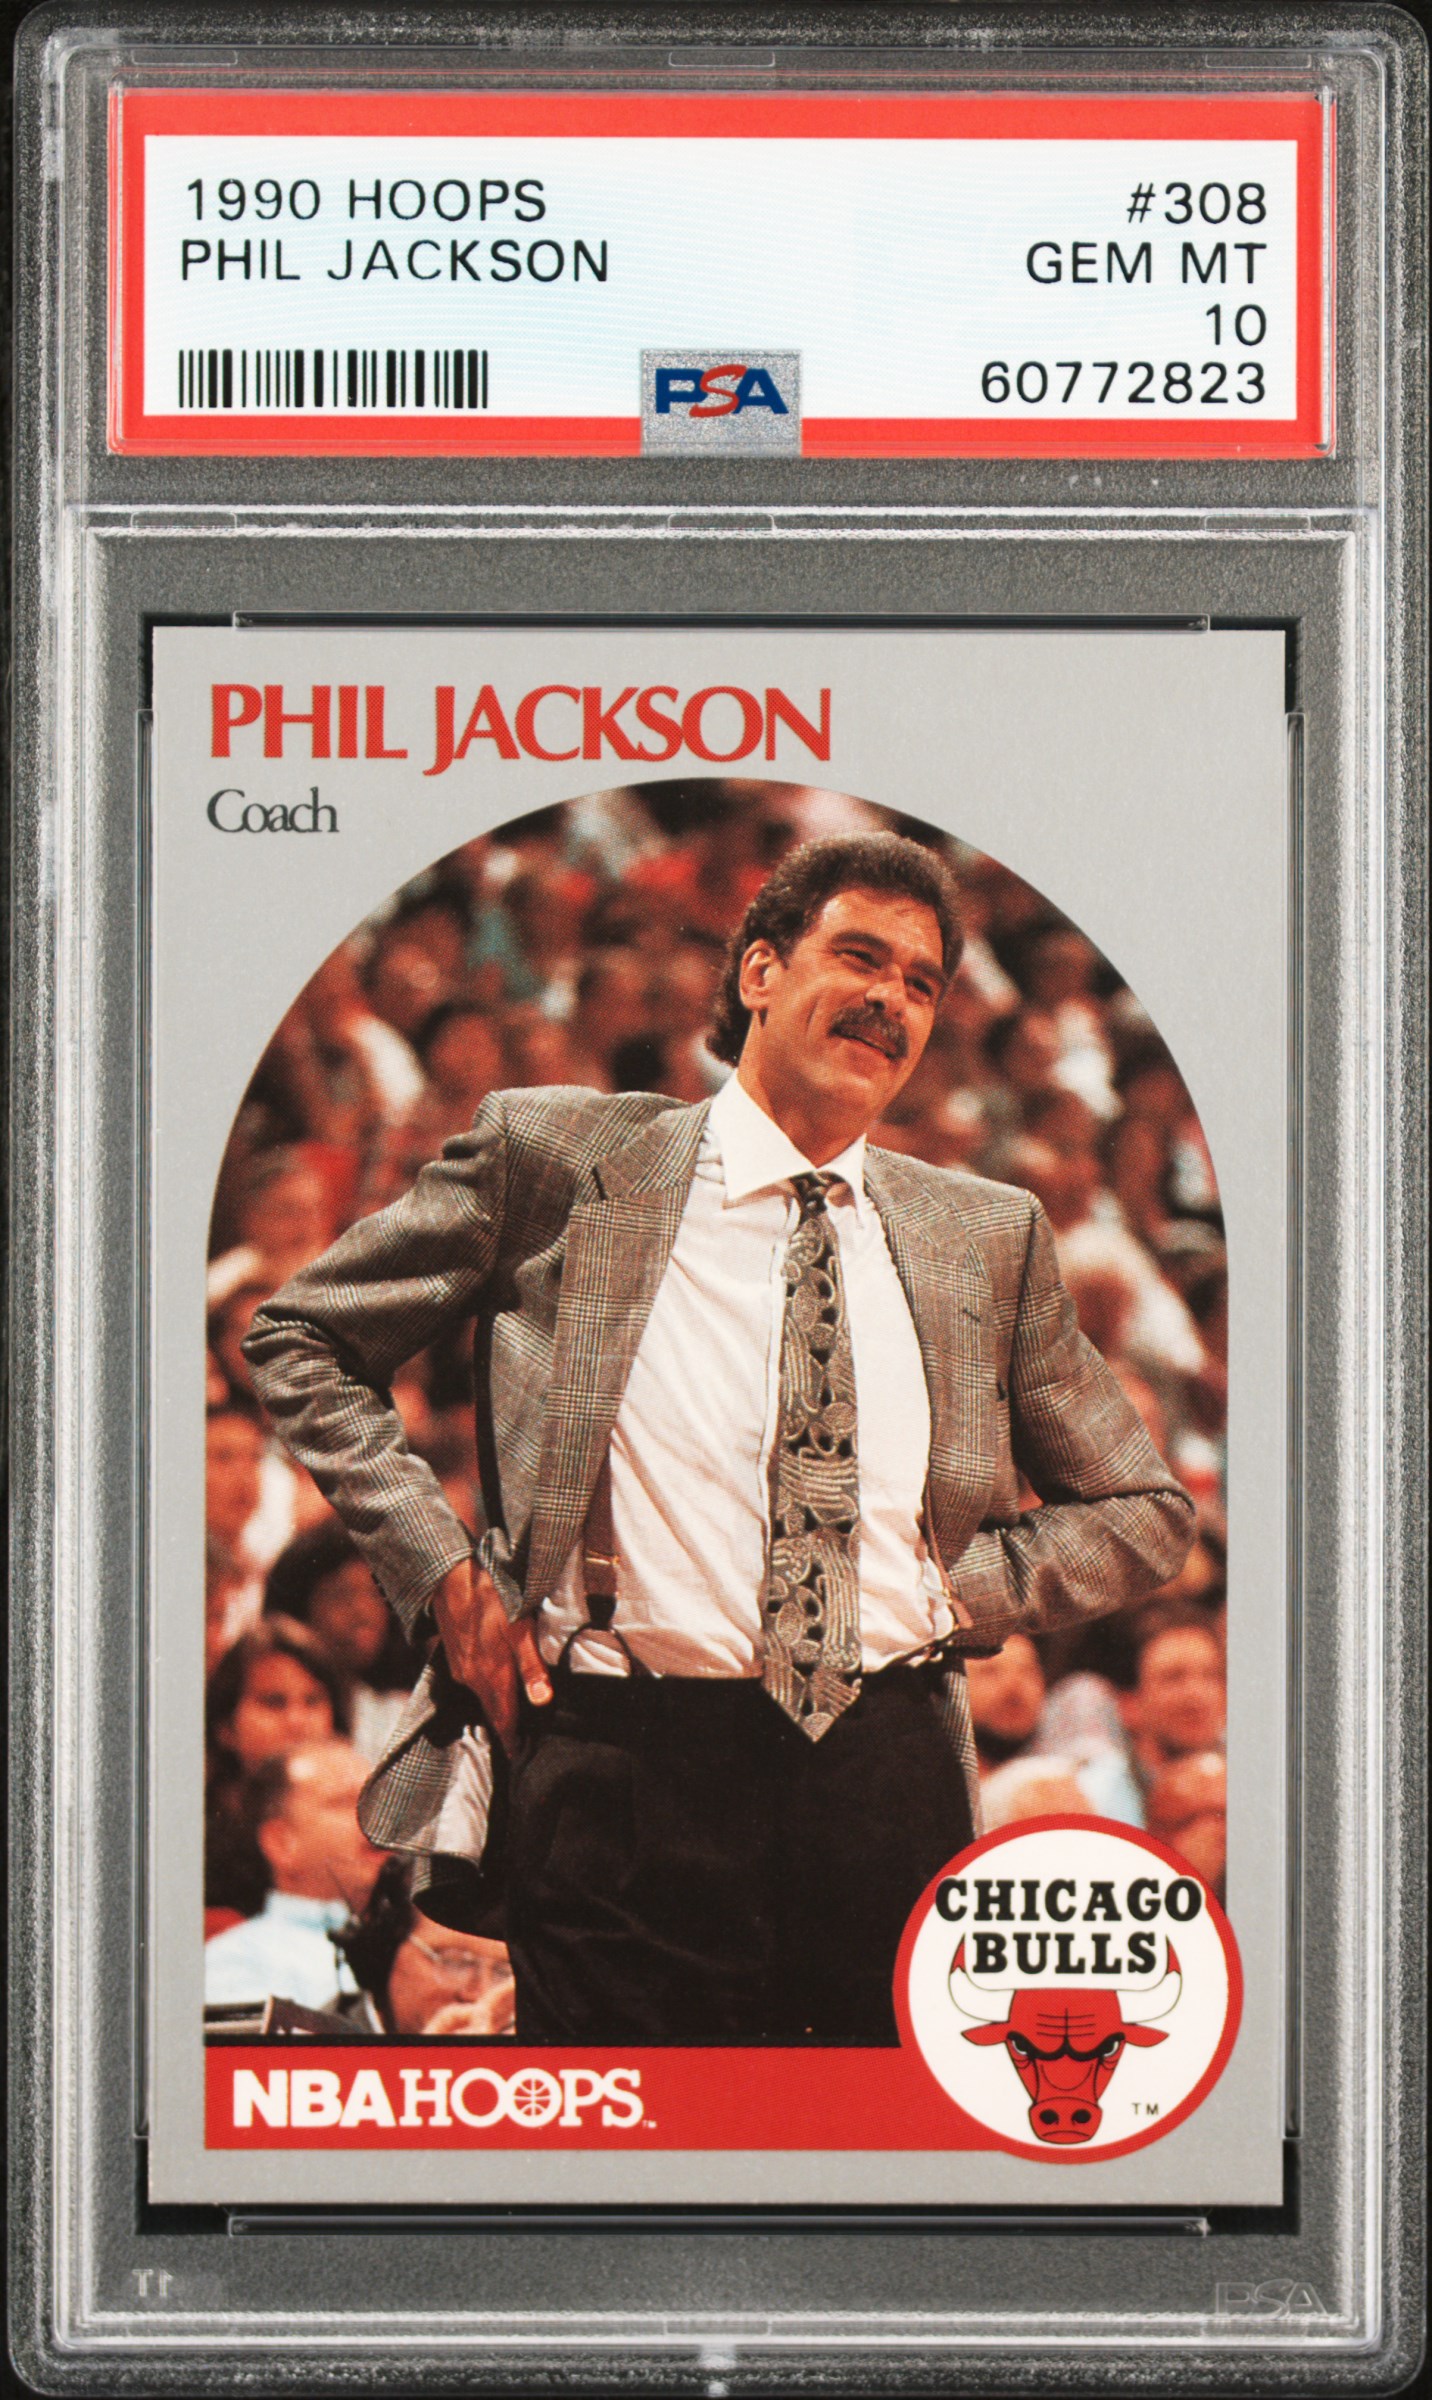 1990 Hoops #308 Phil Jackson PSA 10